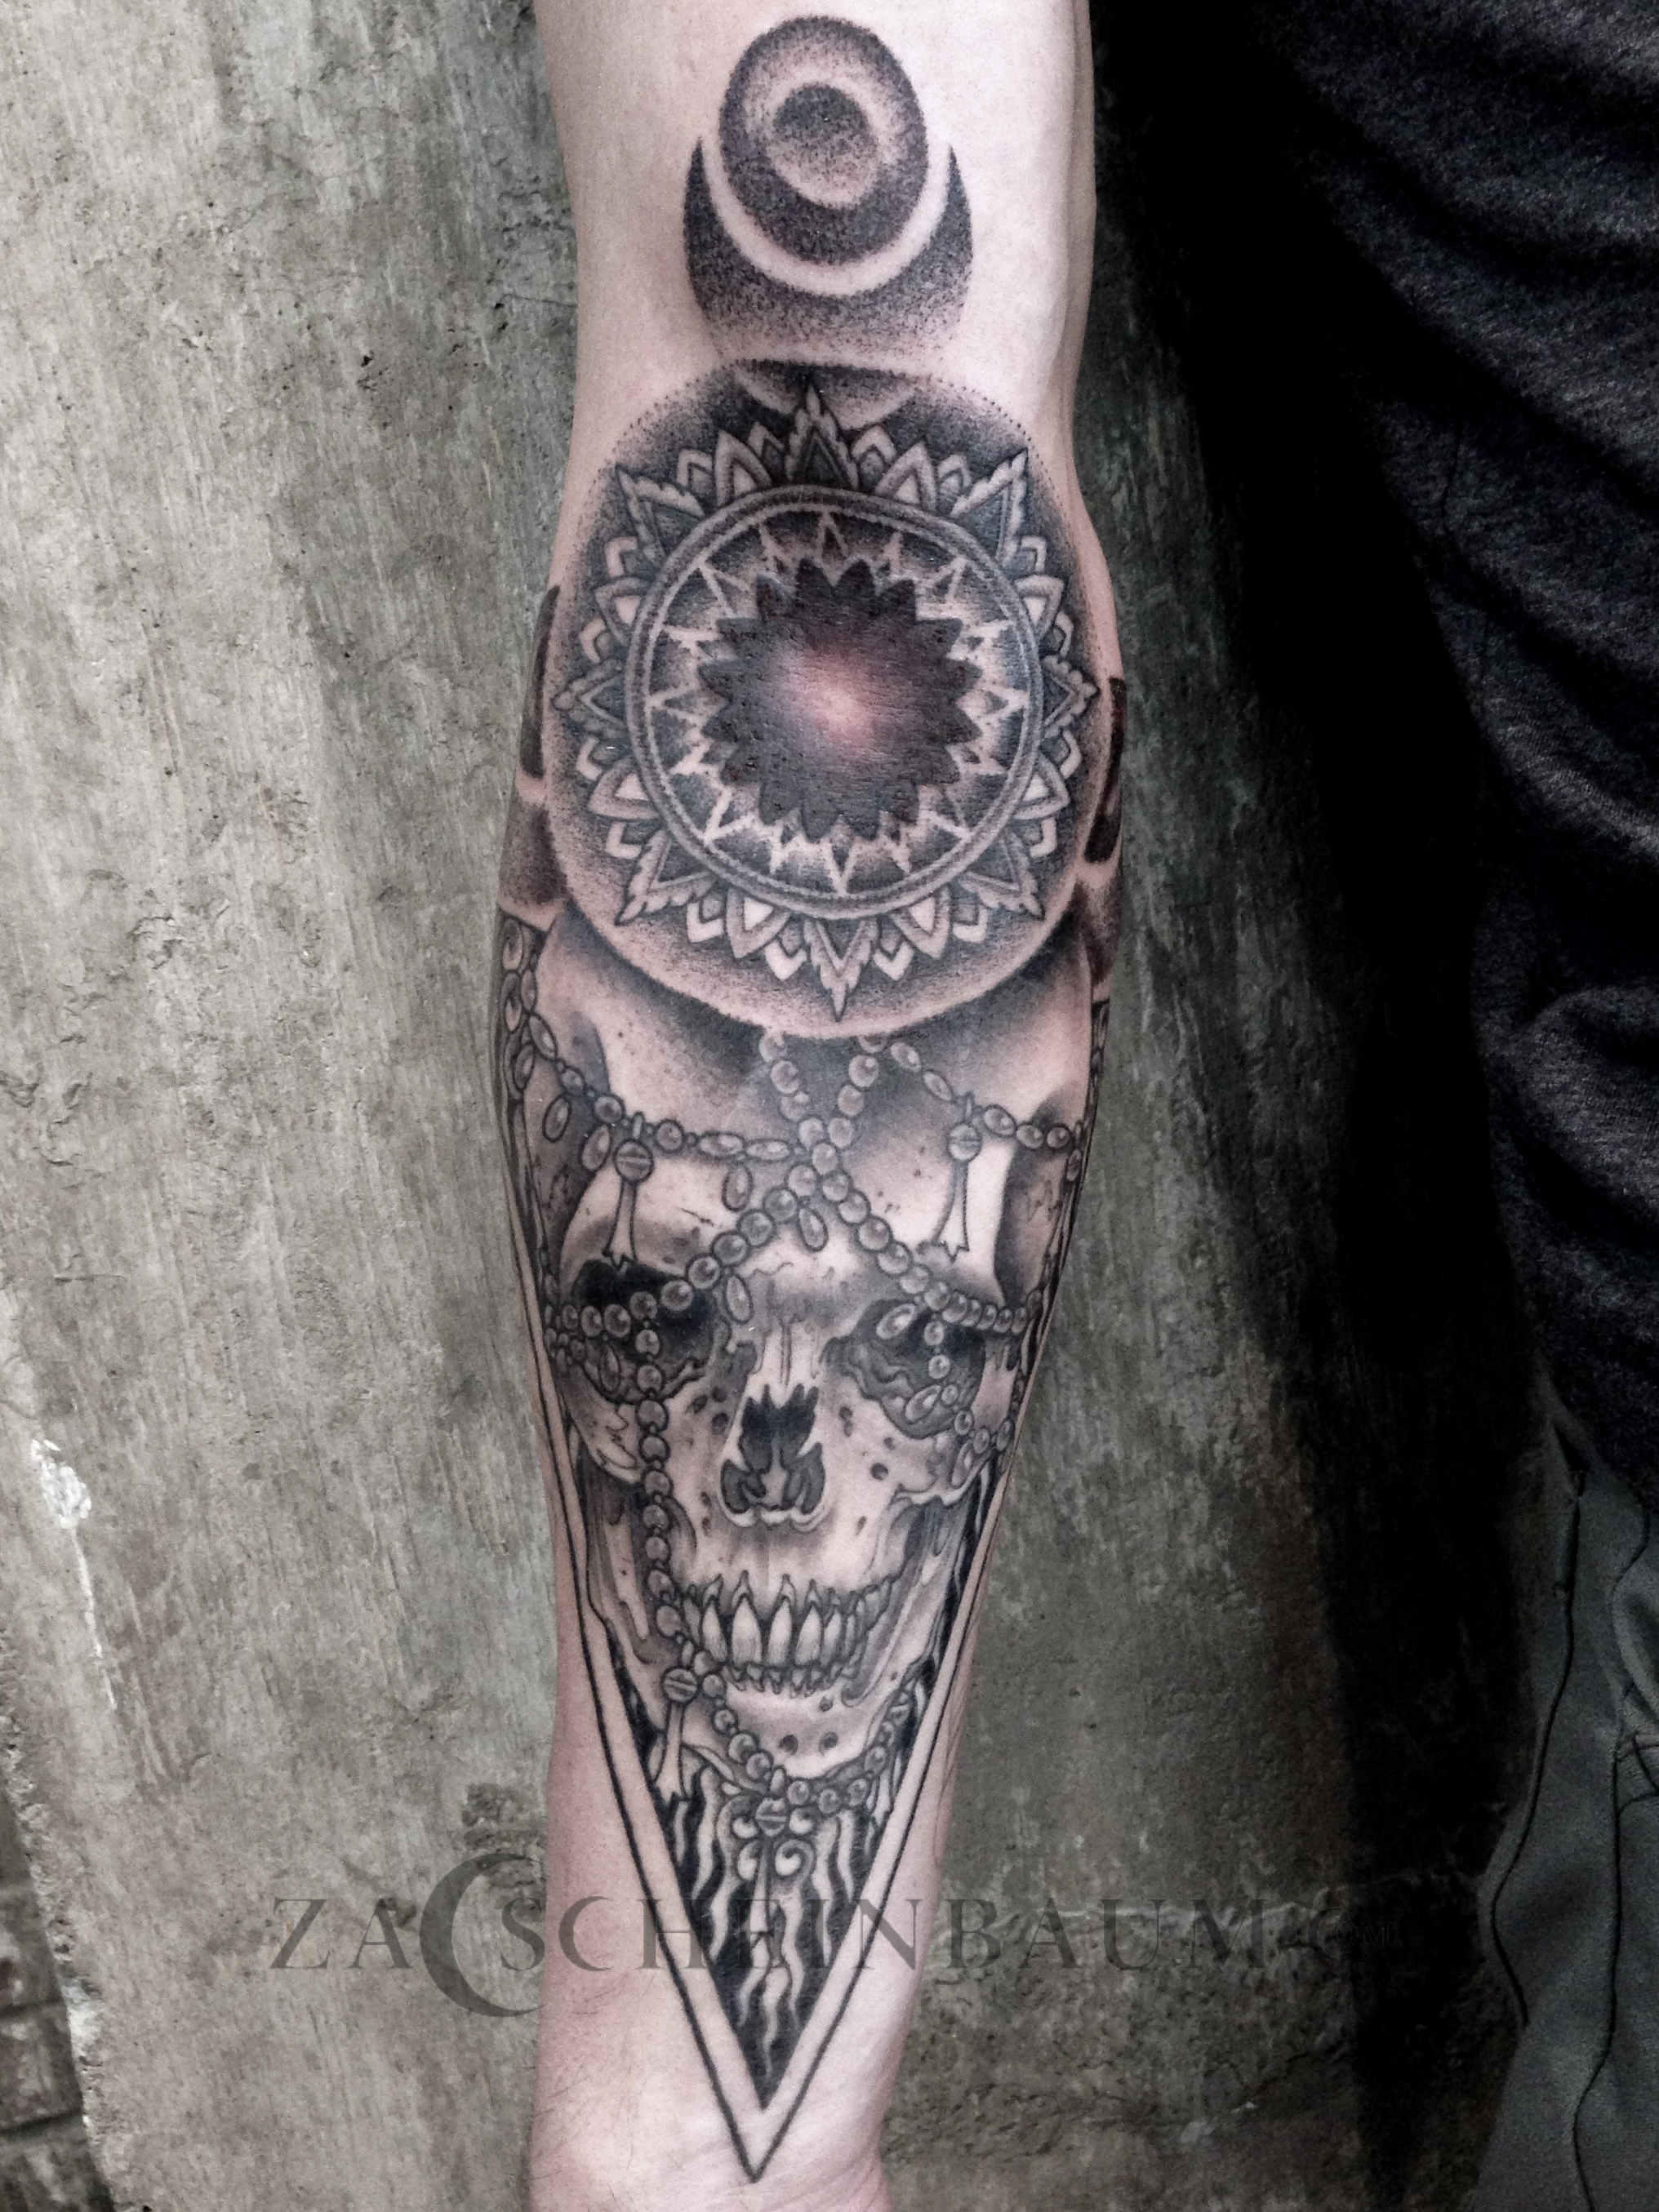 Zac-Scheinbaum-Saved-Tattoo-skull-mandala-2013-2013-1.jpg